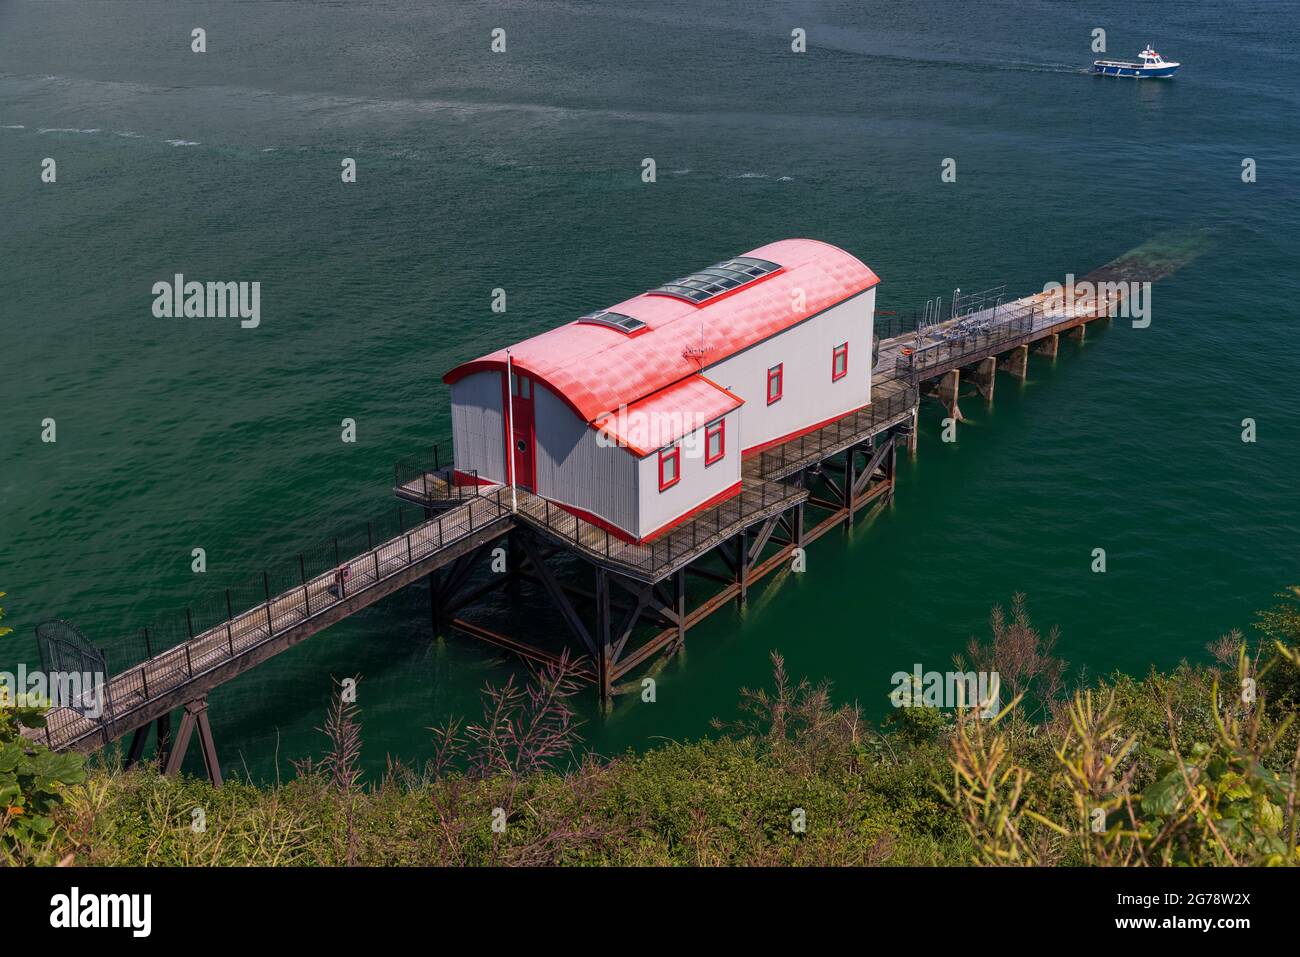 L'ancienne maison « Tenby Lifeboat » est présentée sur les grands designs de TV.Tenby, pays de Galles, Royaume-Uni Banque D'Images